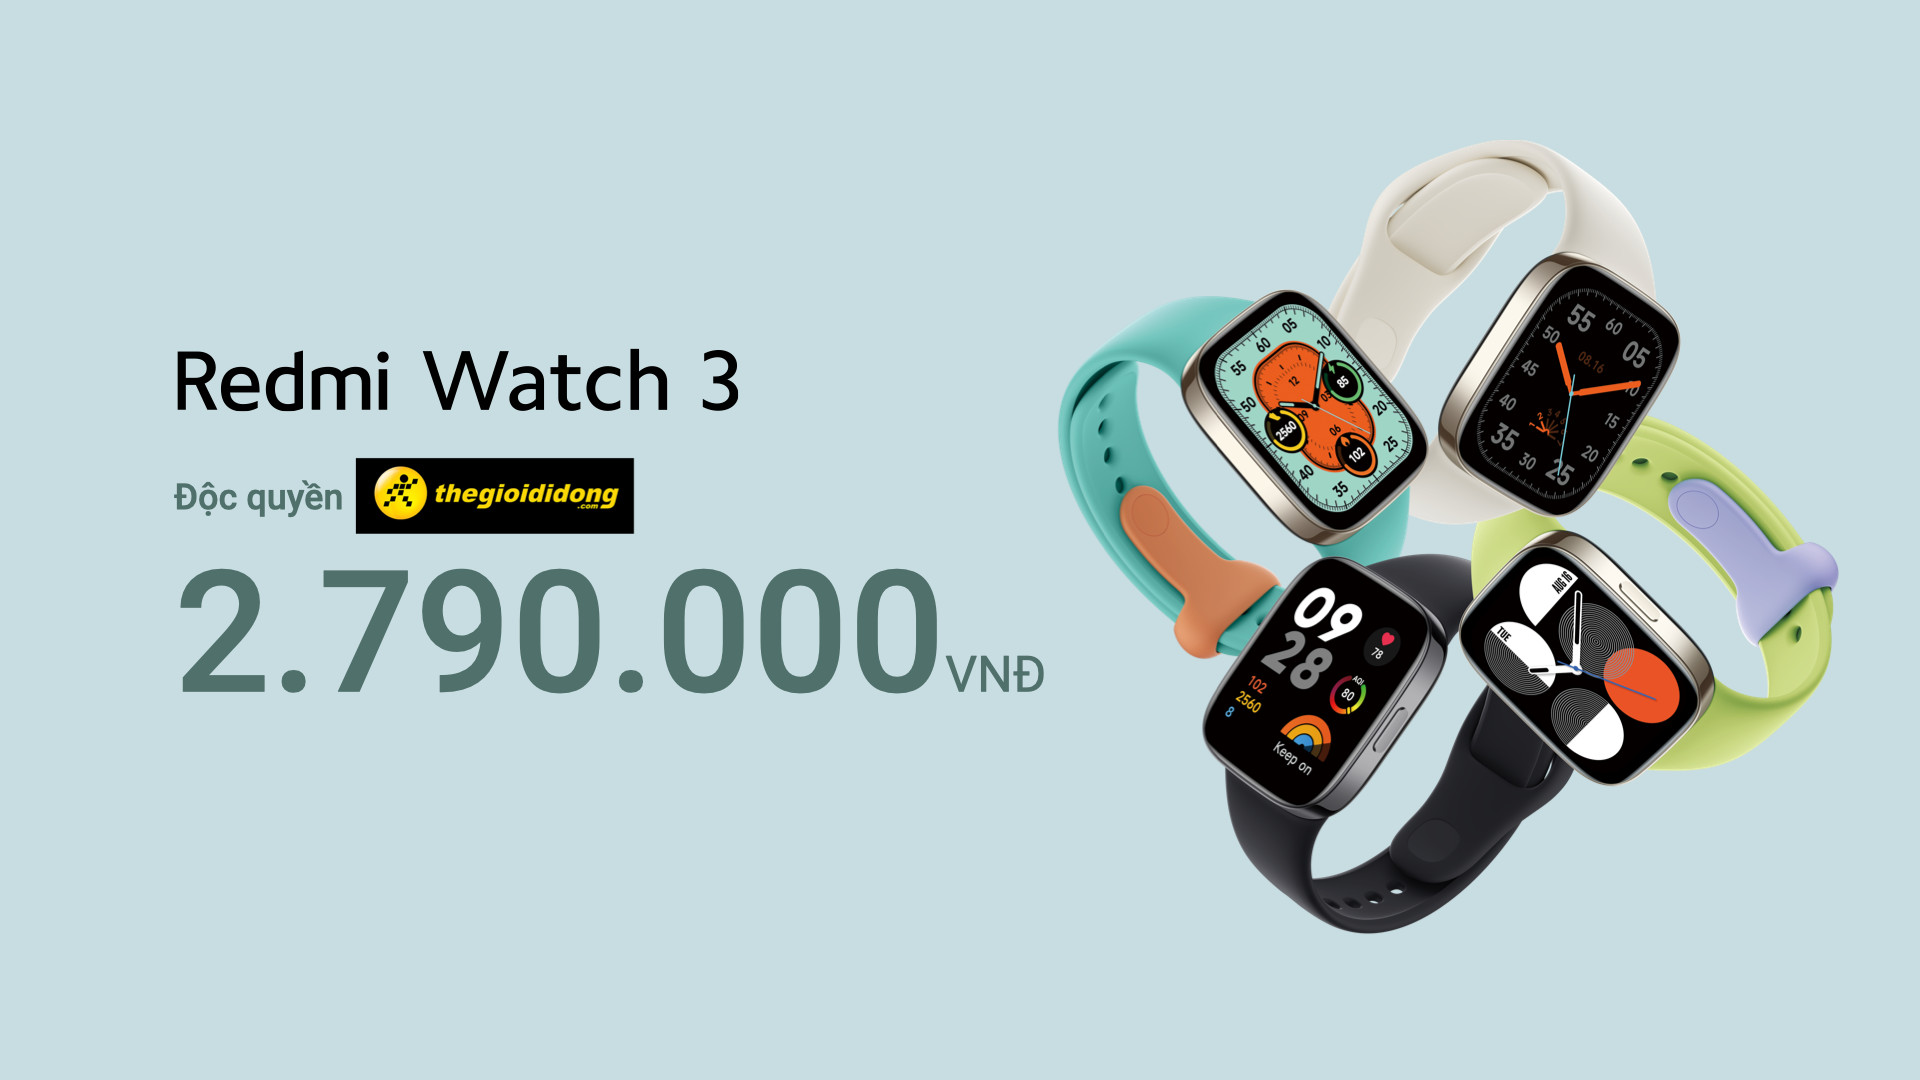 Ra mắt Redmi Watch 3: Thiết kế giống Apple Watch, GPS tích hợp, pin 12 ngày, giá 2,79 triệu đồng - Ảnh 3.